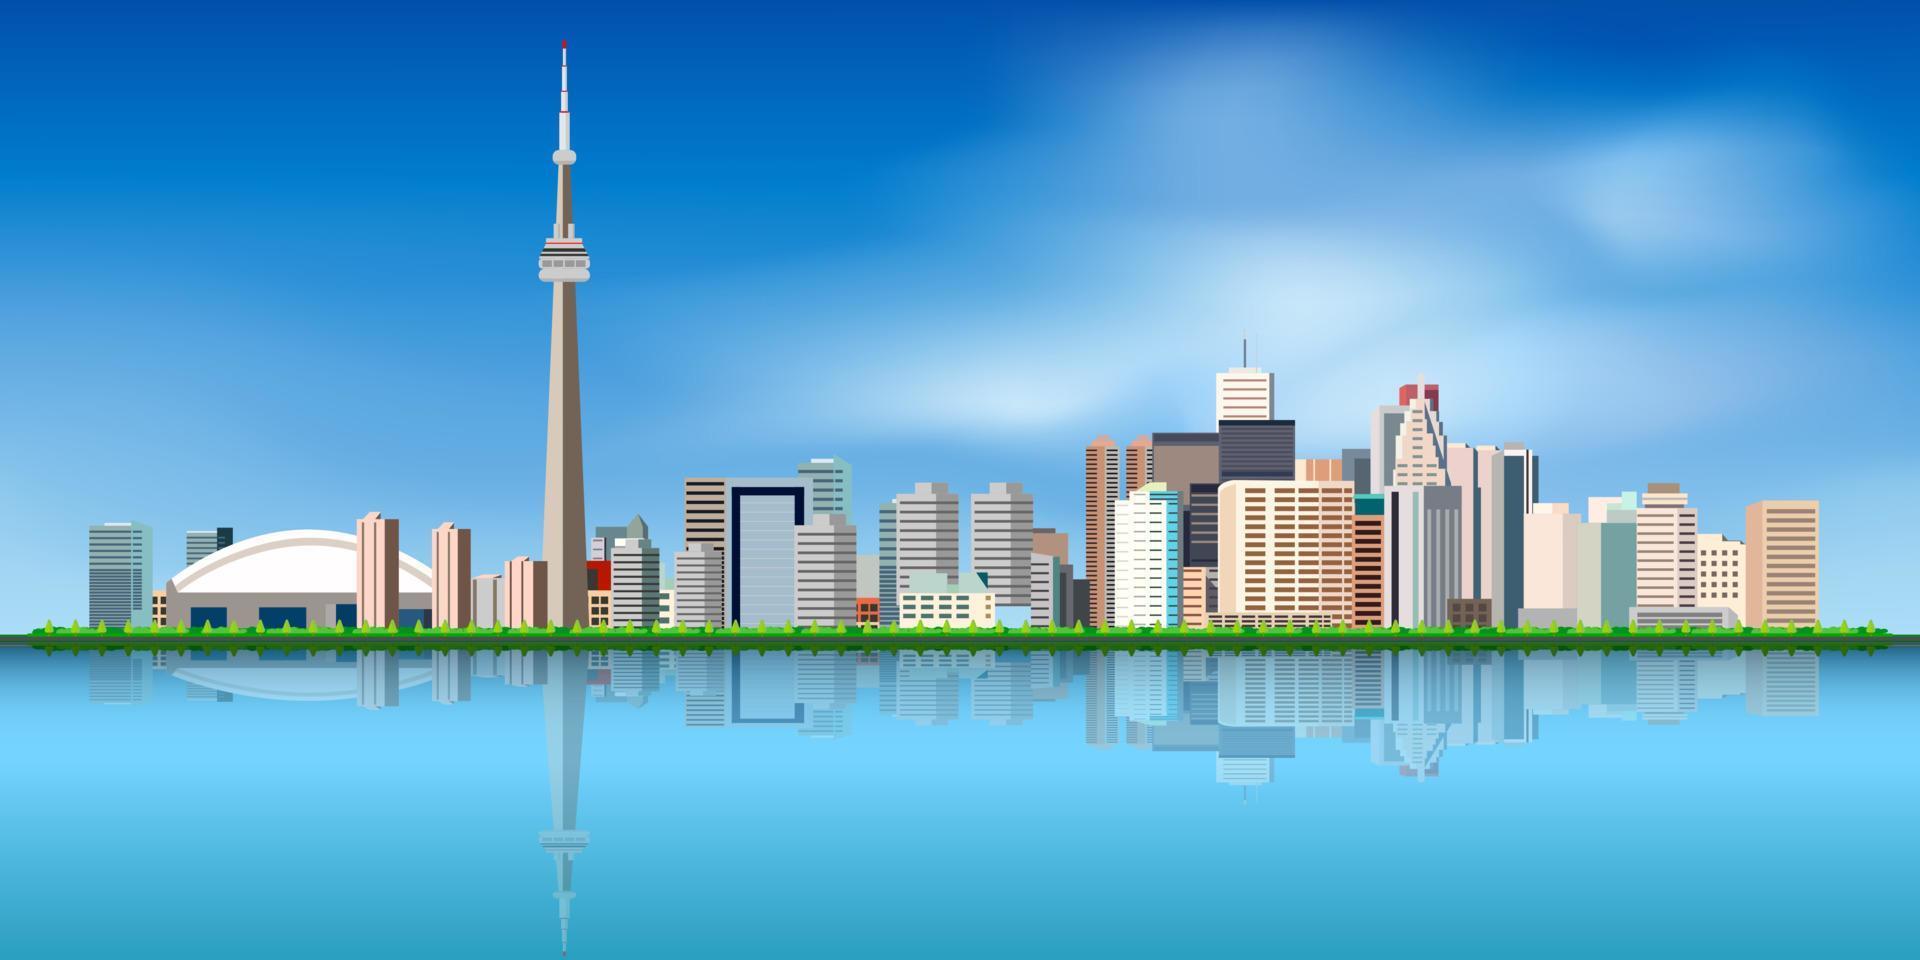 toronto kanada skyline färg byggnader, blå himmel och reflektioner. vektor illustration.